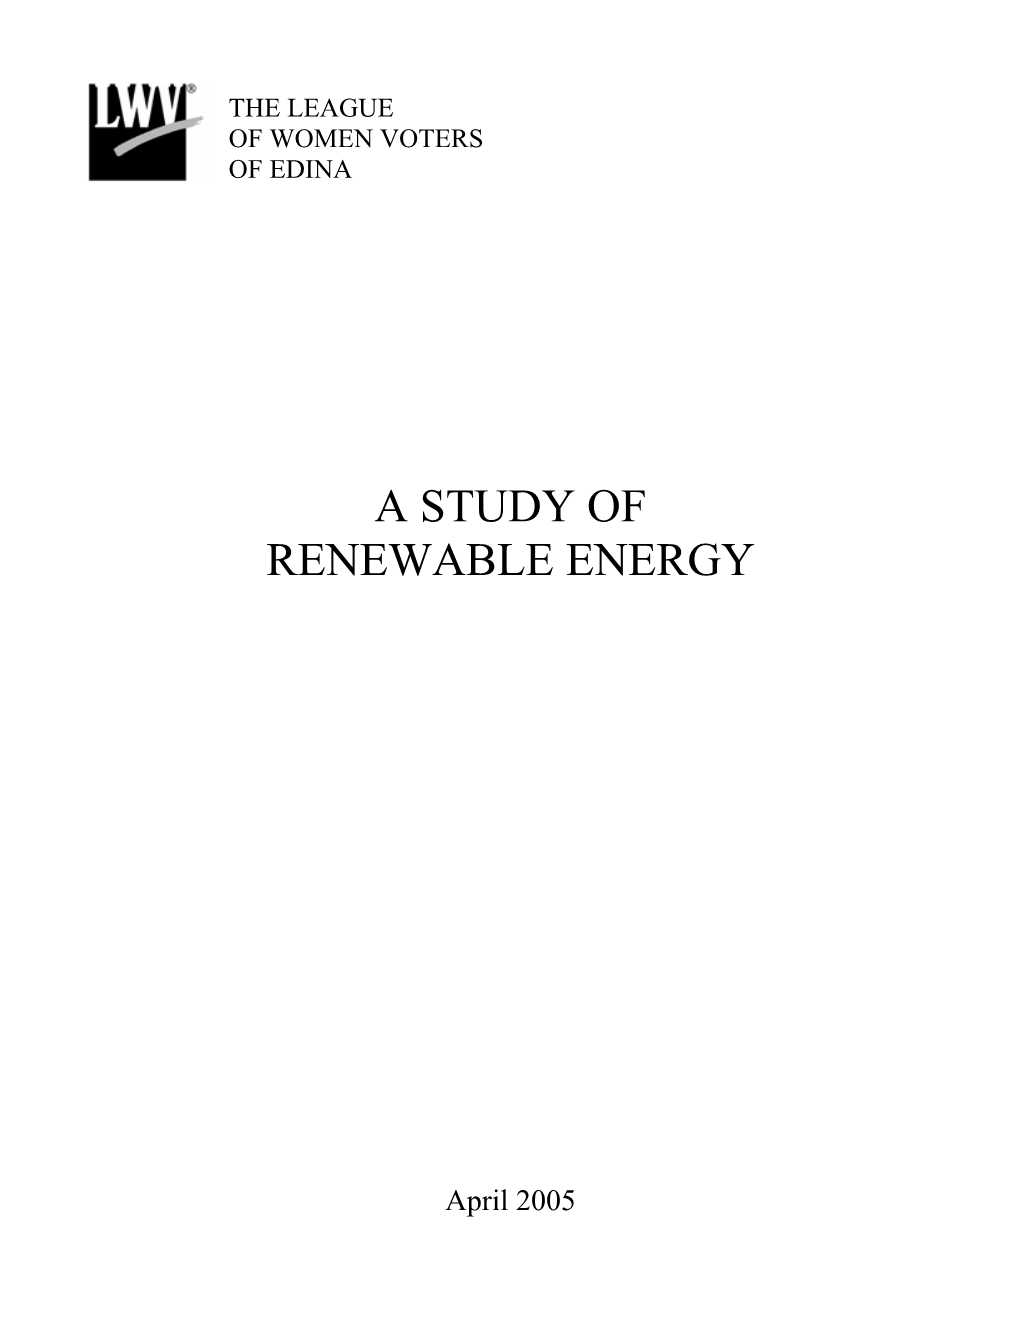 A Study of Renewable Energy